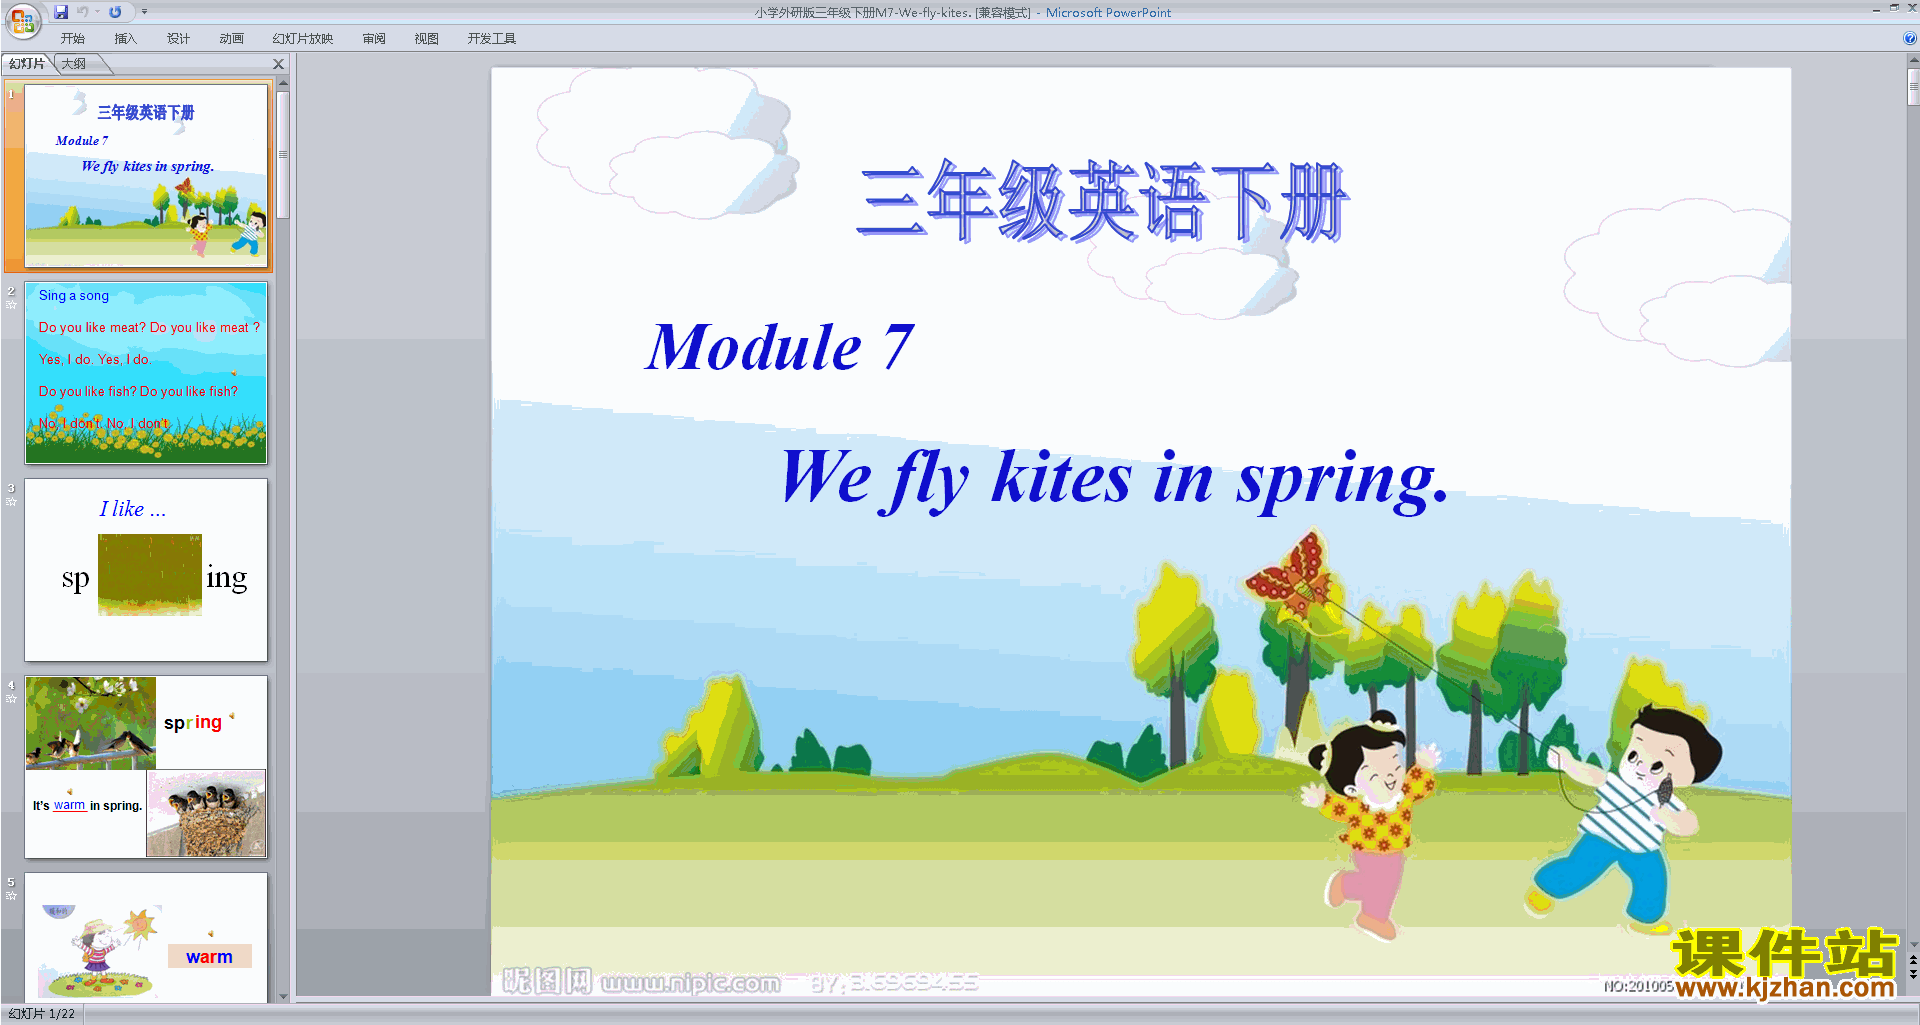 Module 7 Unit1 We fly kites in springpptμ